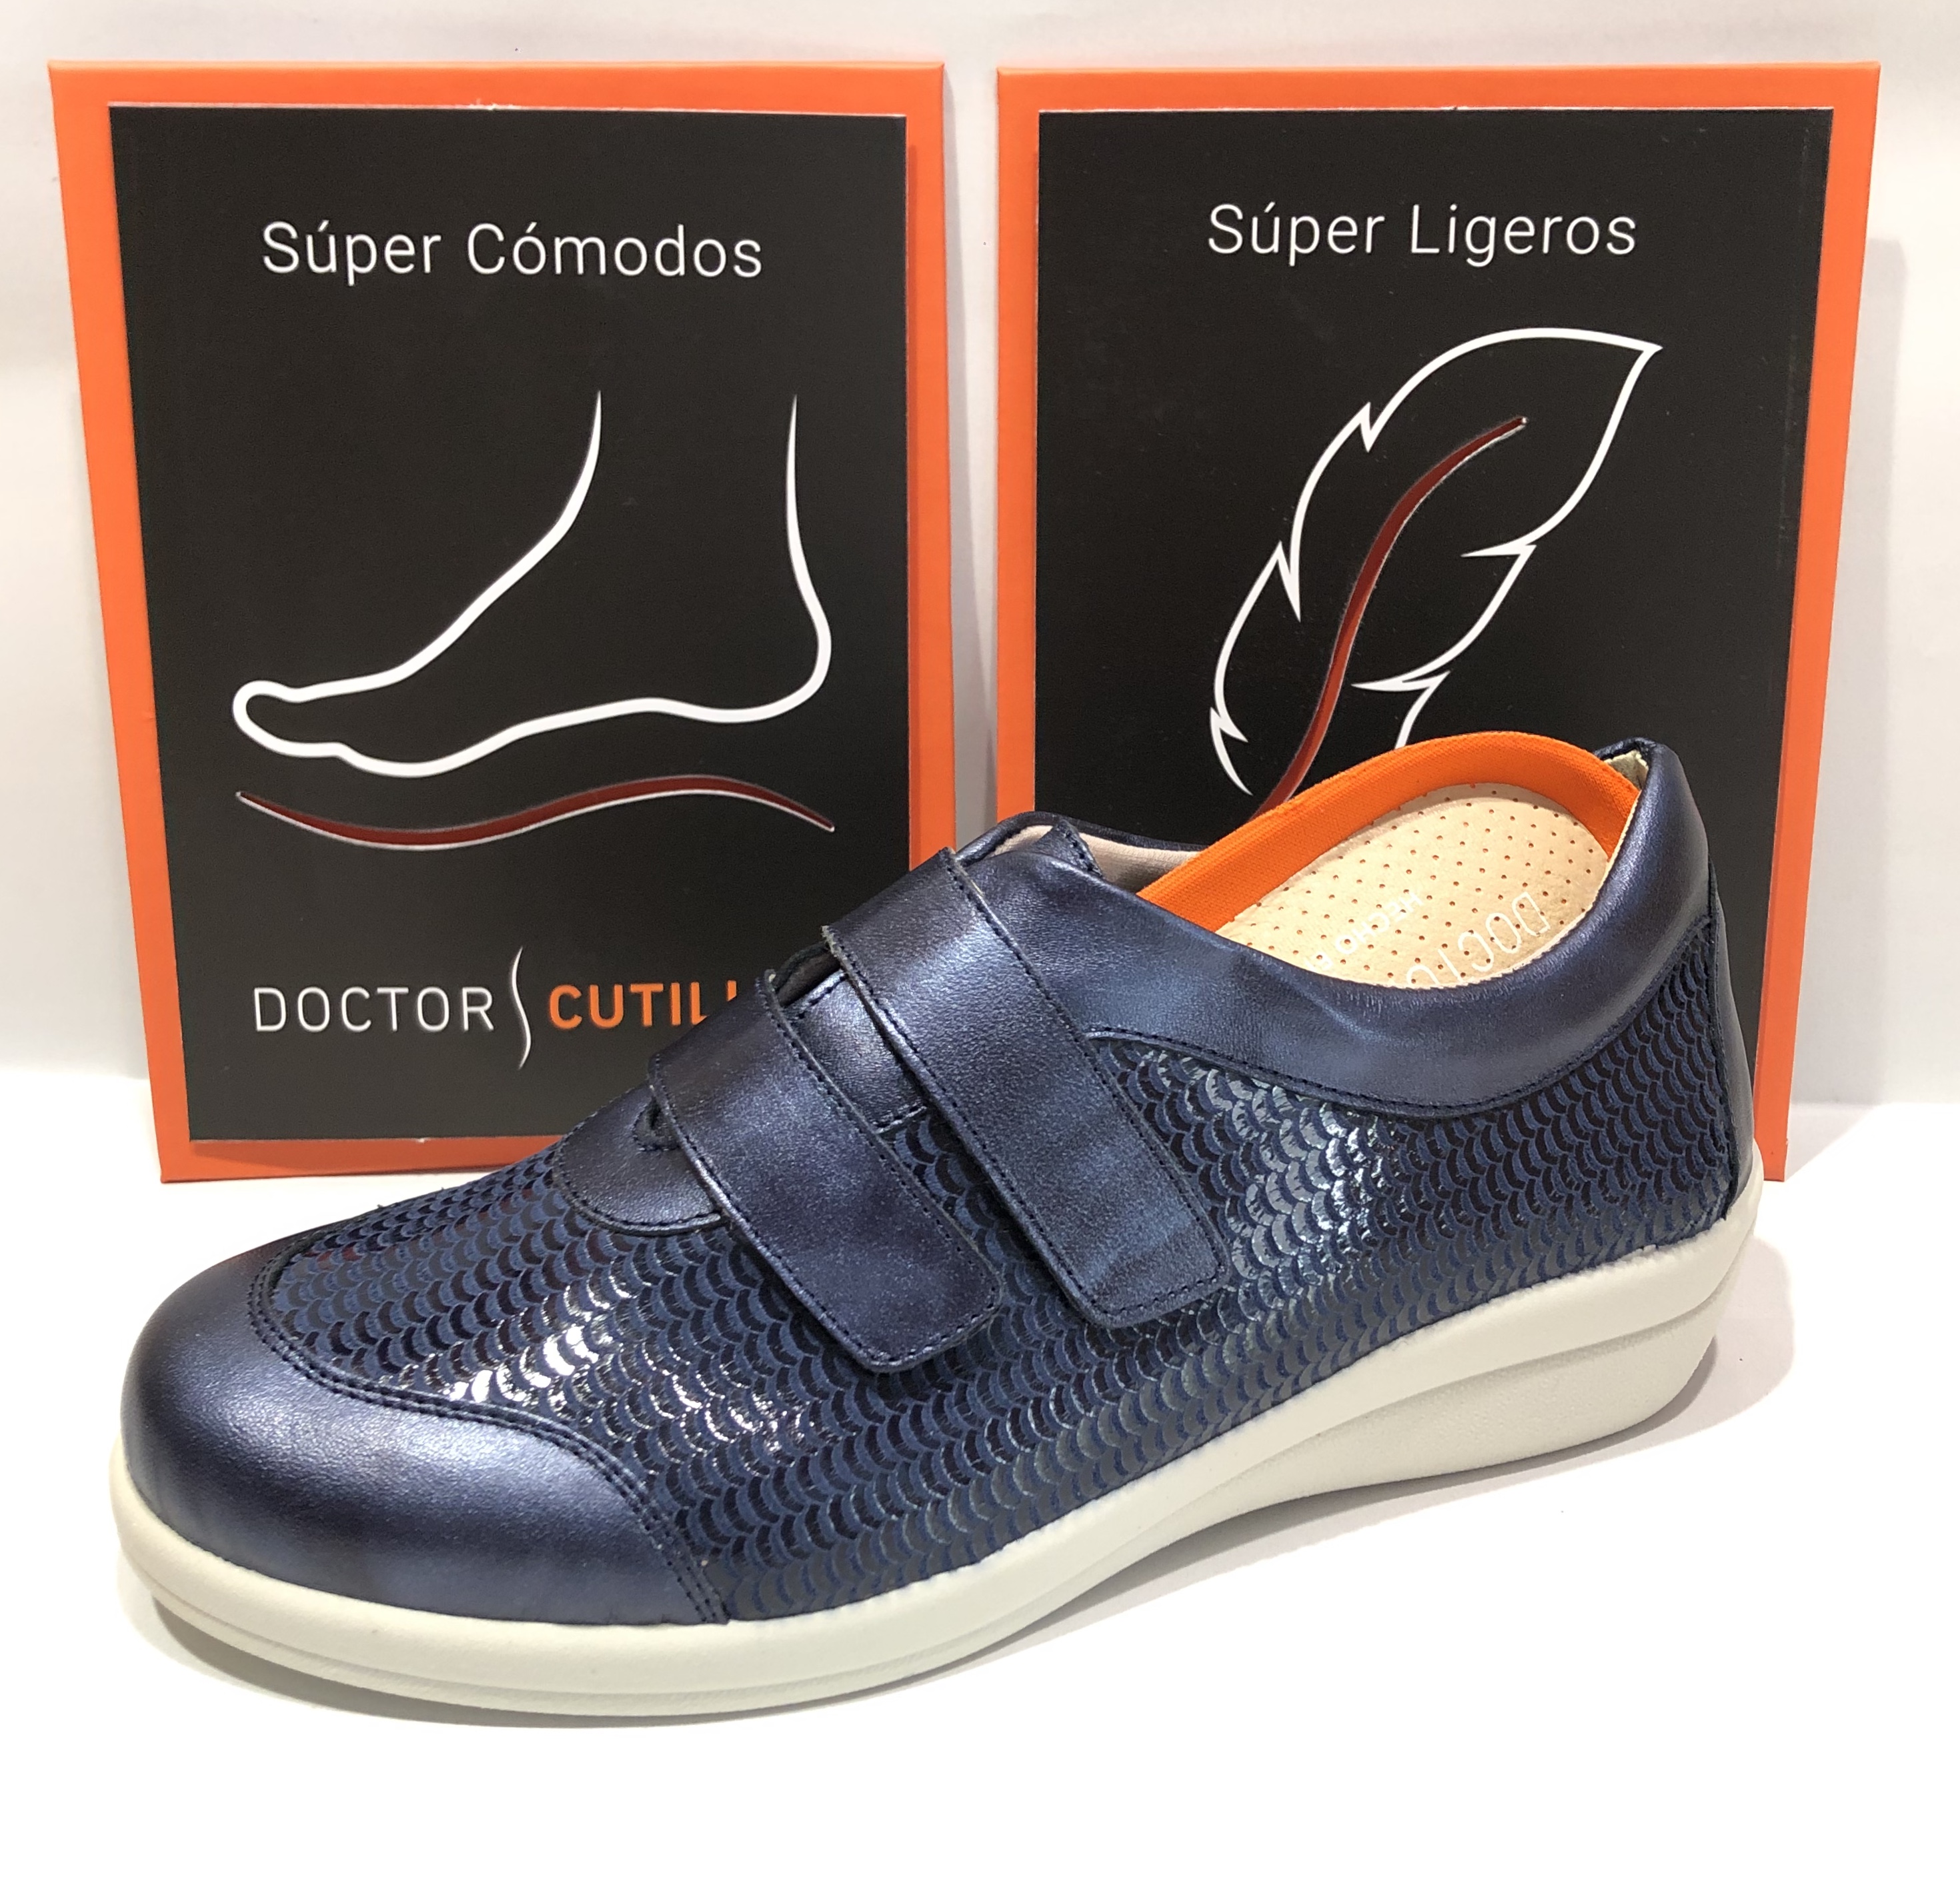 Doctor calidad y confort en un zapato Zapaterías fv